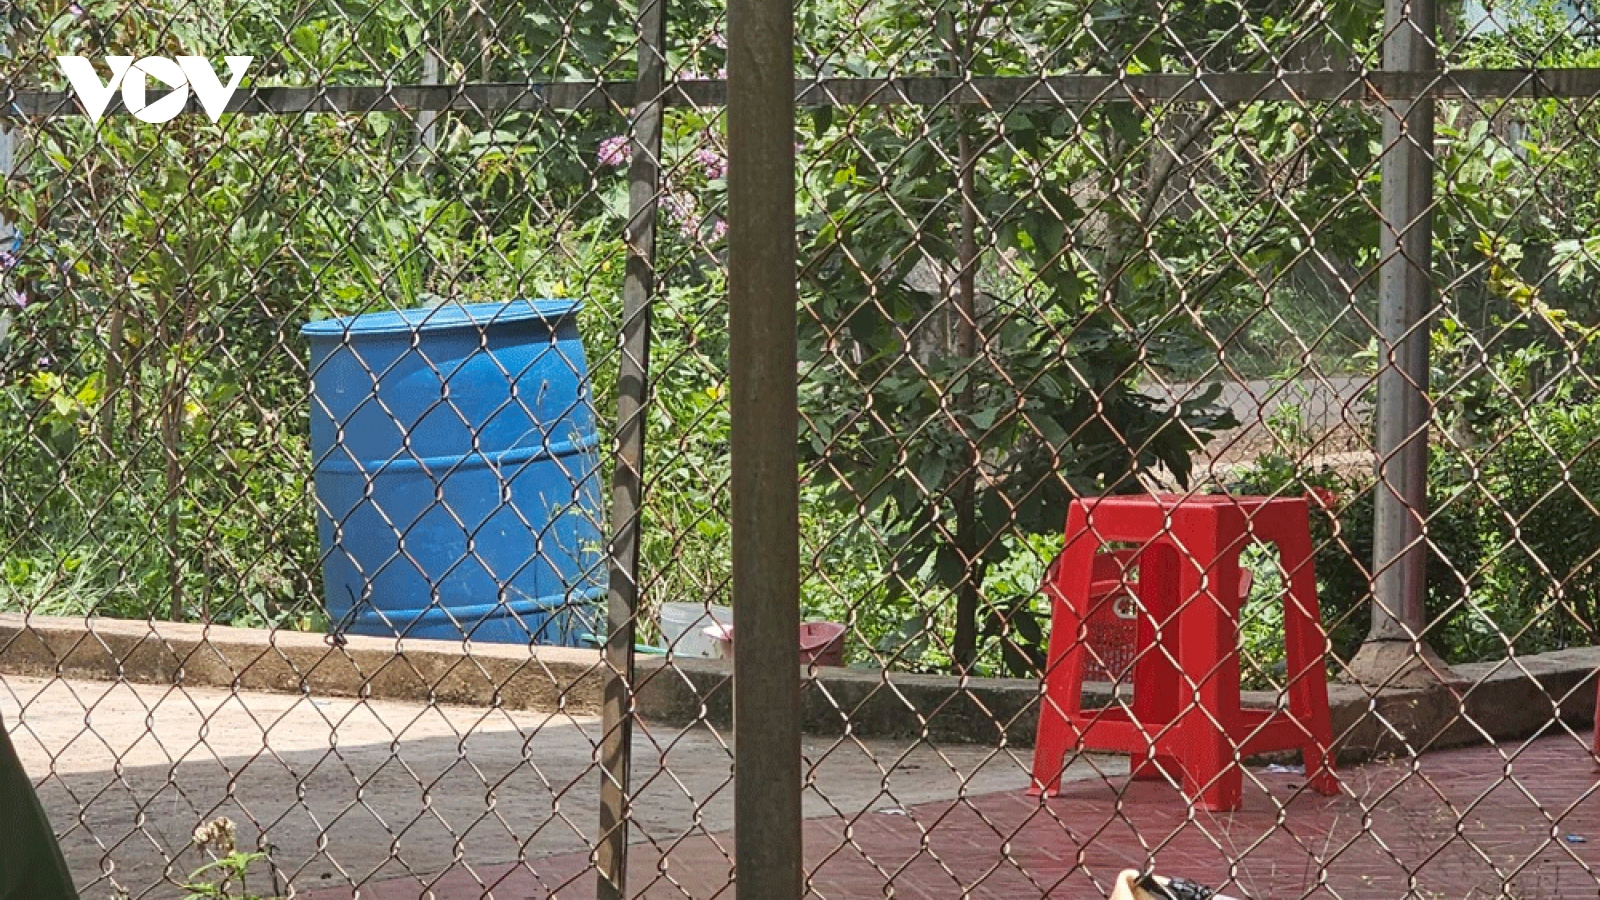 Người phụ nữ ở Bình Phước tử vong trong thùng phuy chứa nước